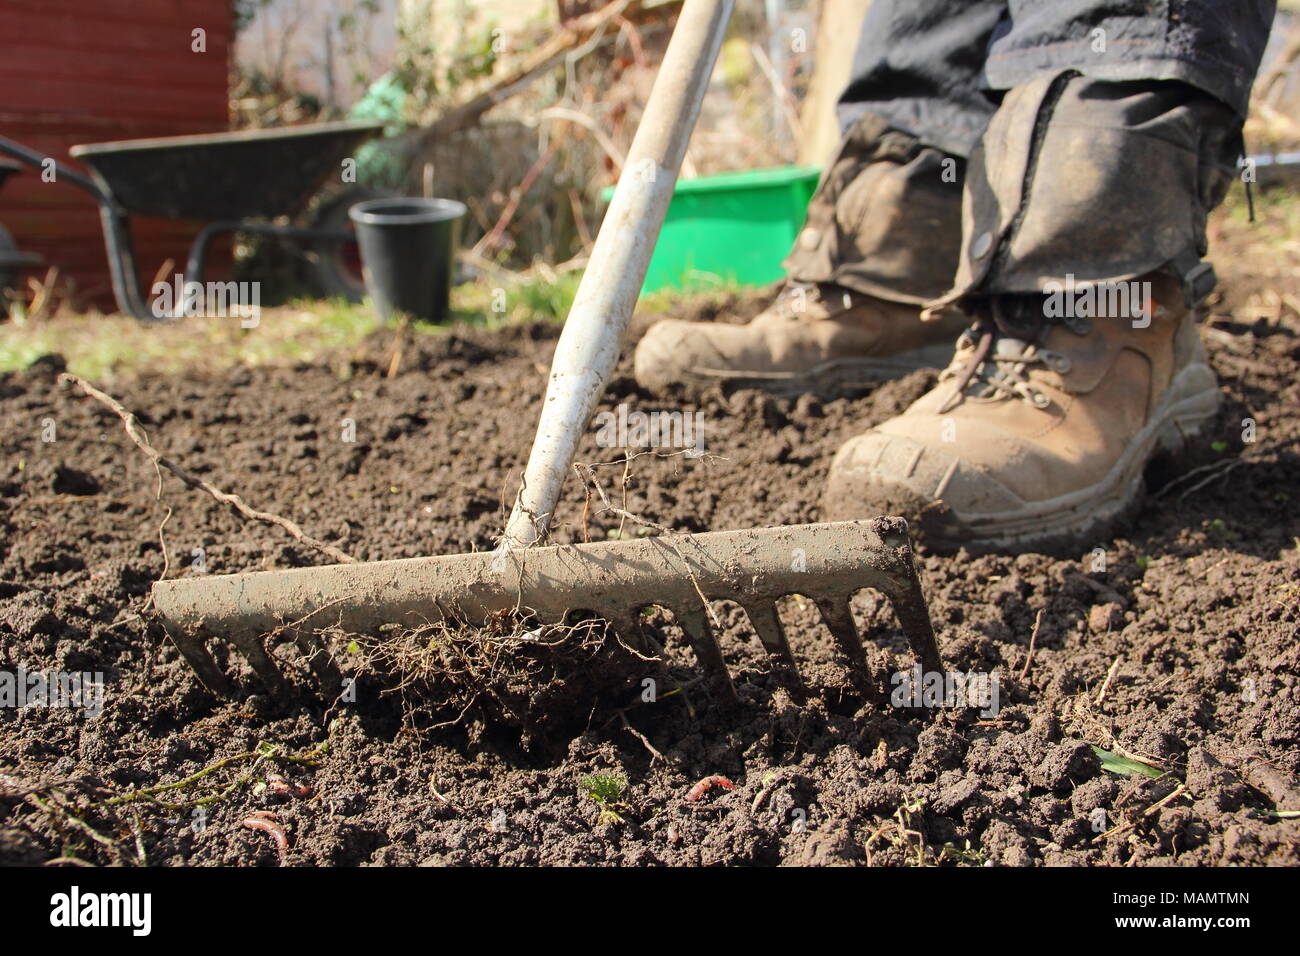 Jardinero jefe de nivel utiliza el rastrillo para romper el suelo y quitar las malas hierbas en una cama vegetal antes de la siembra, a comienzos de la primavera, REINO UNIDO Foto de stock